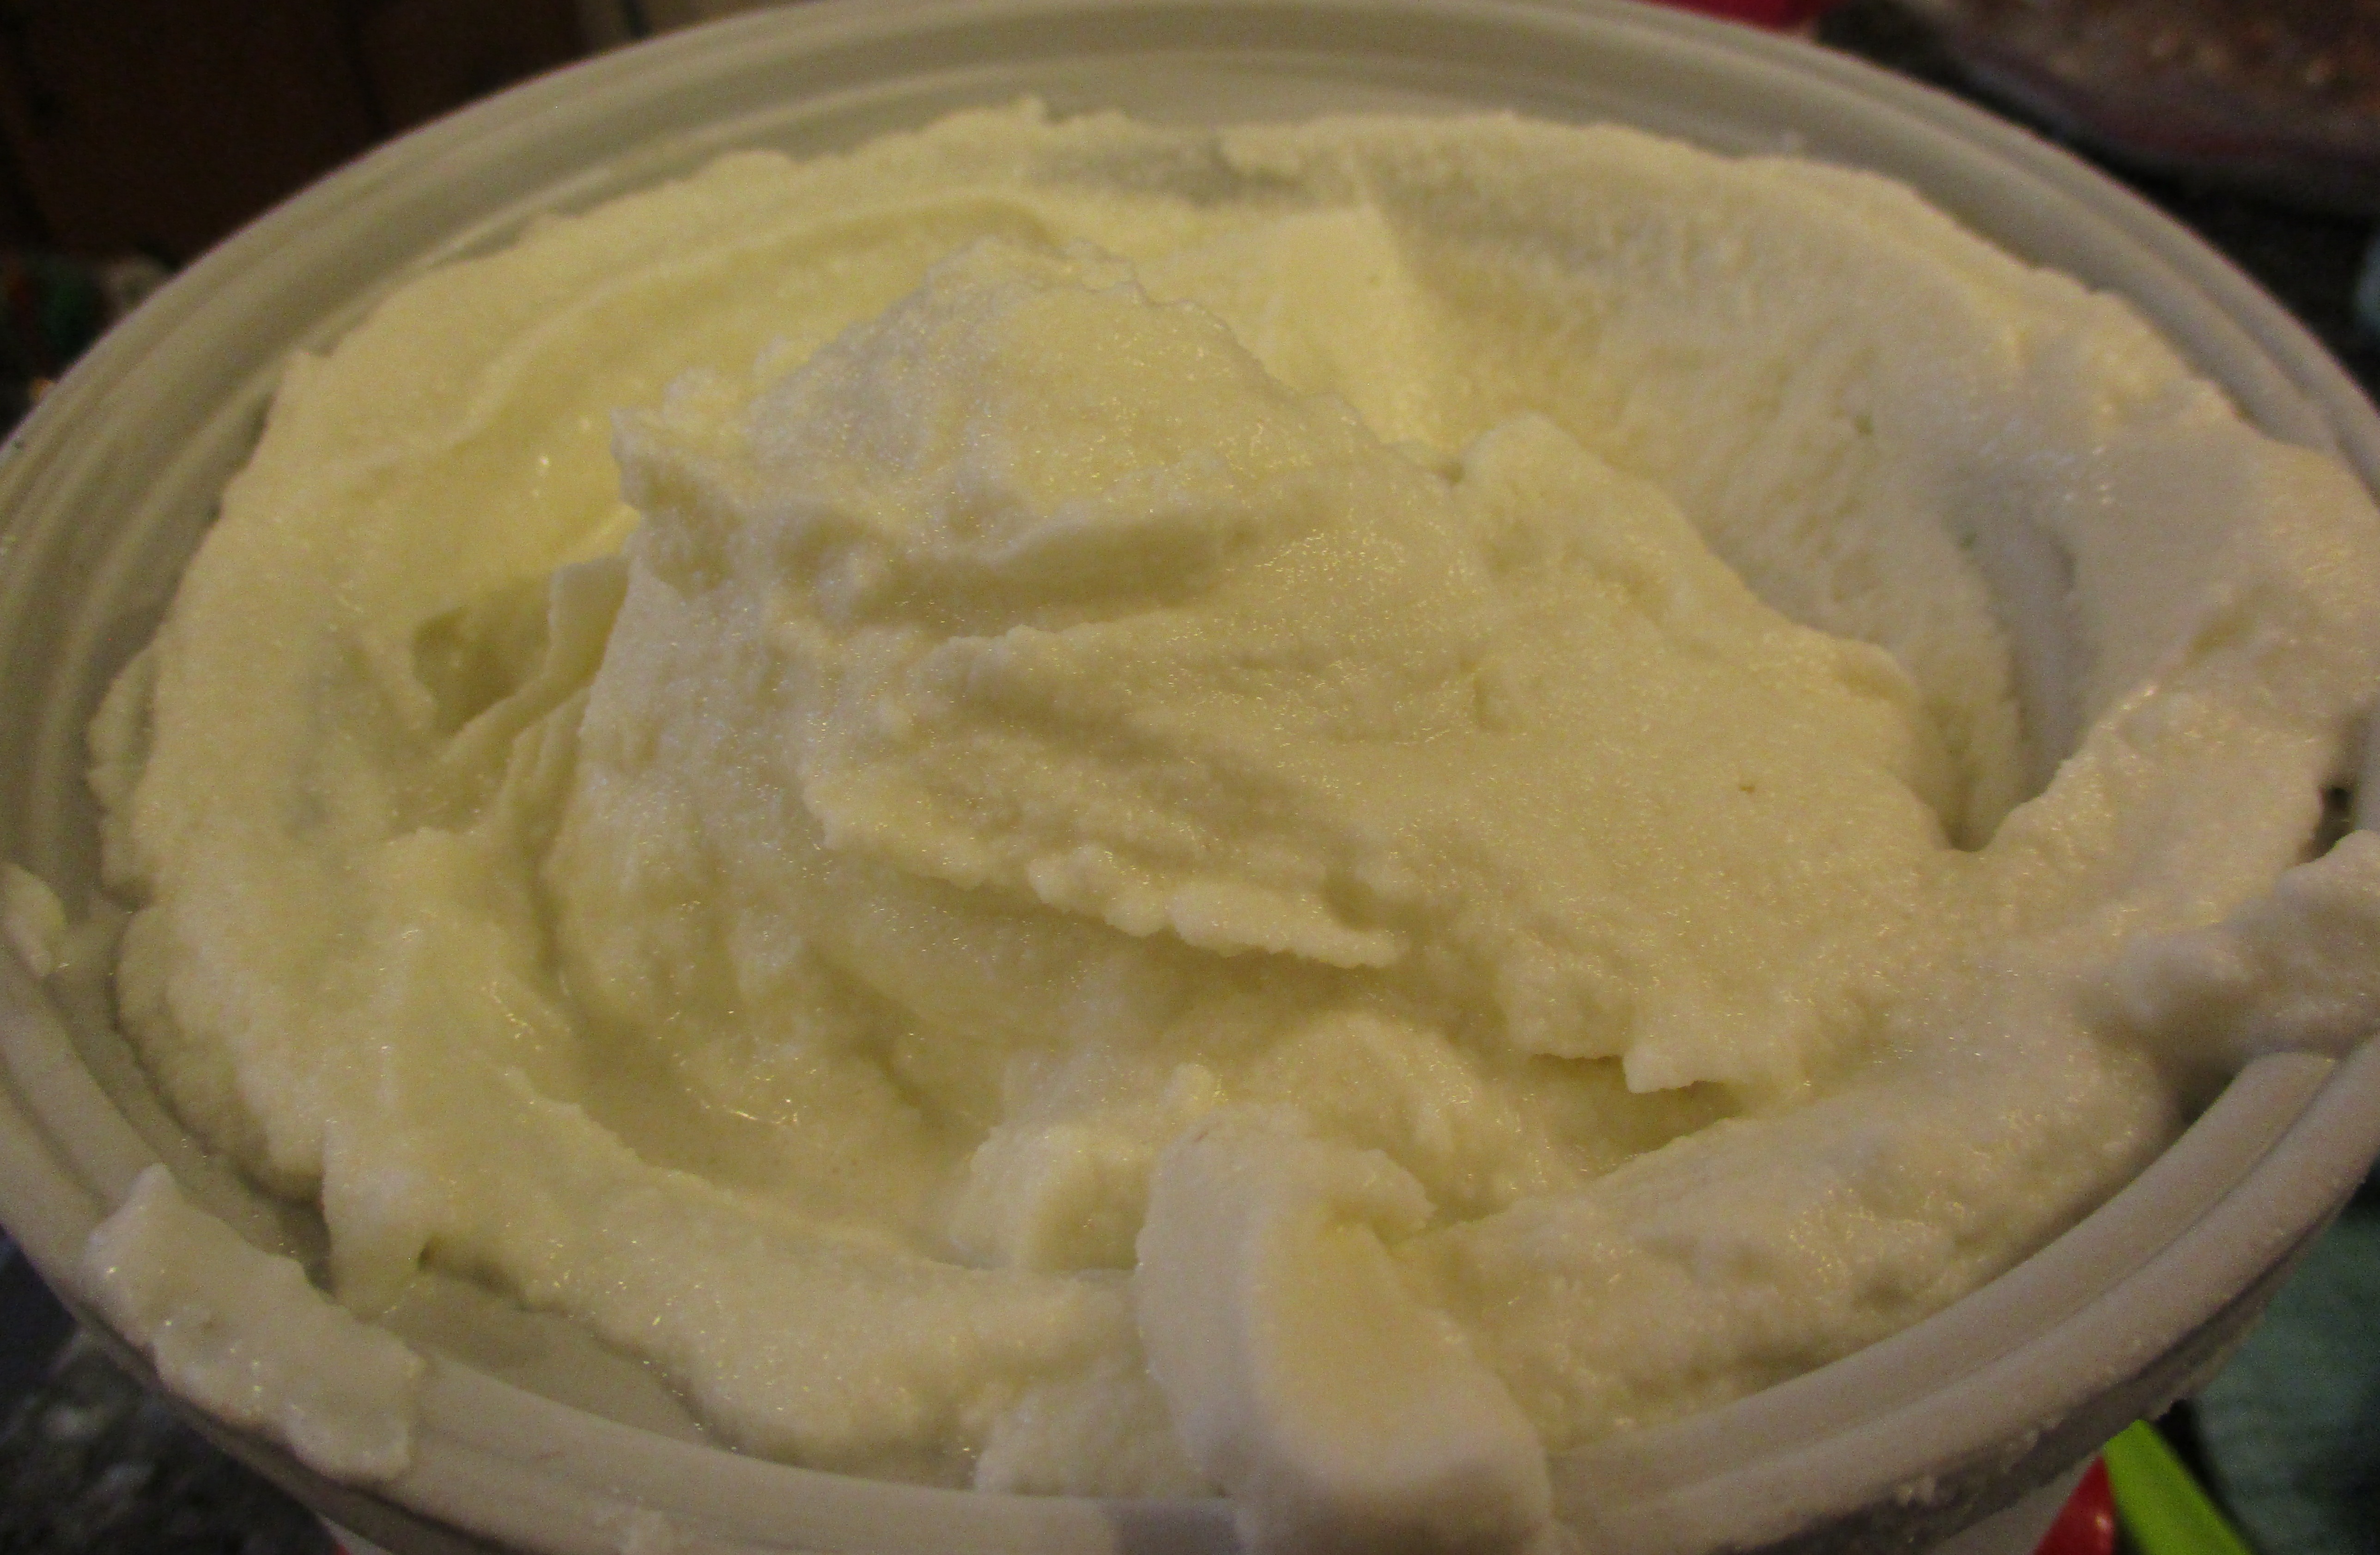 20 Minute Homemade Ice Cream